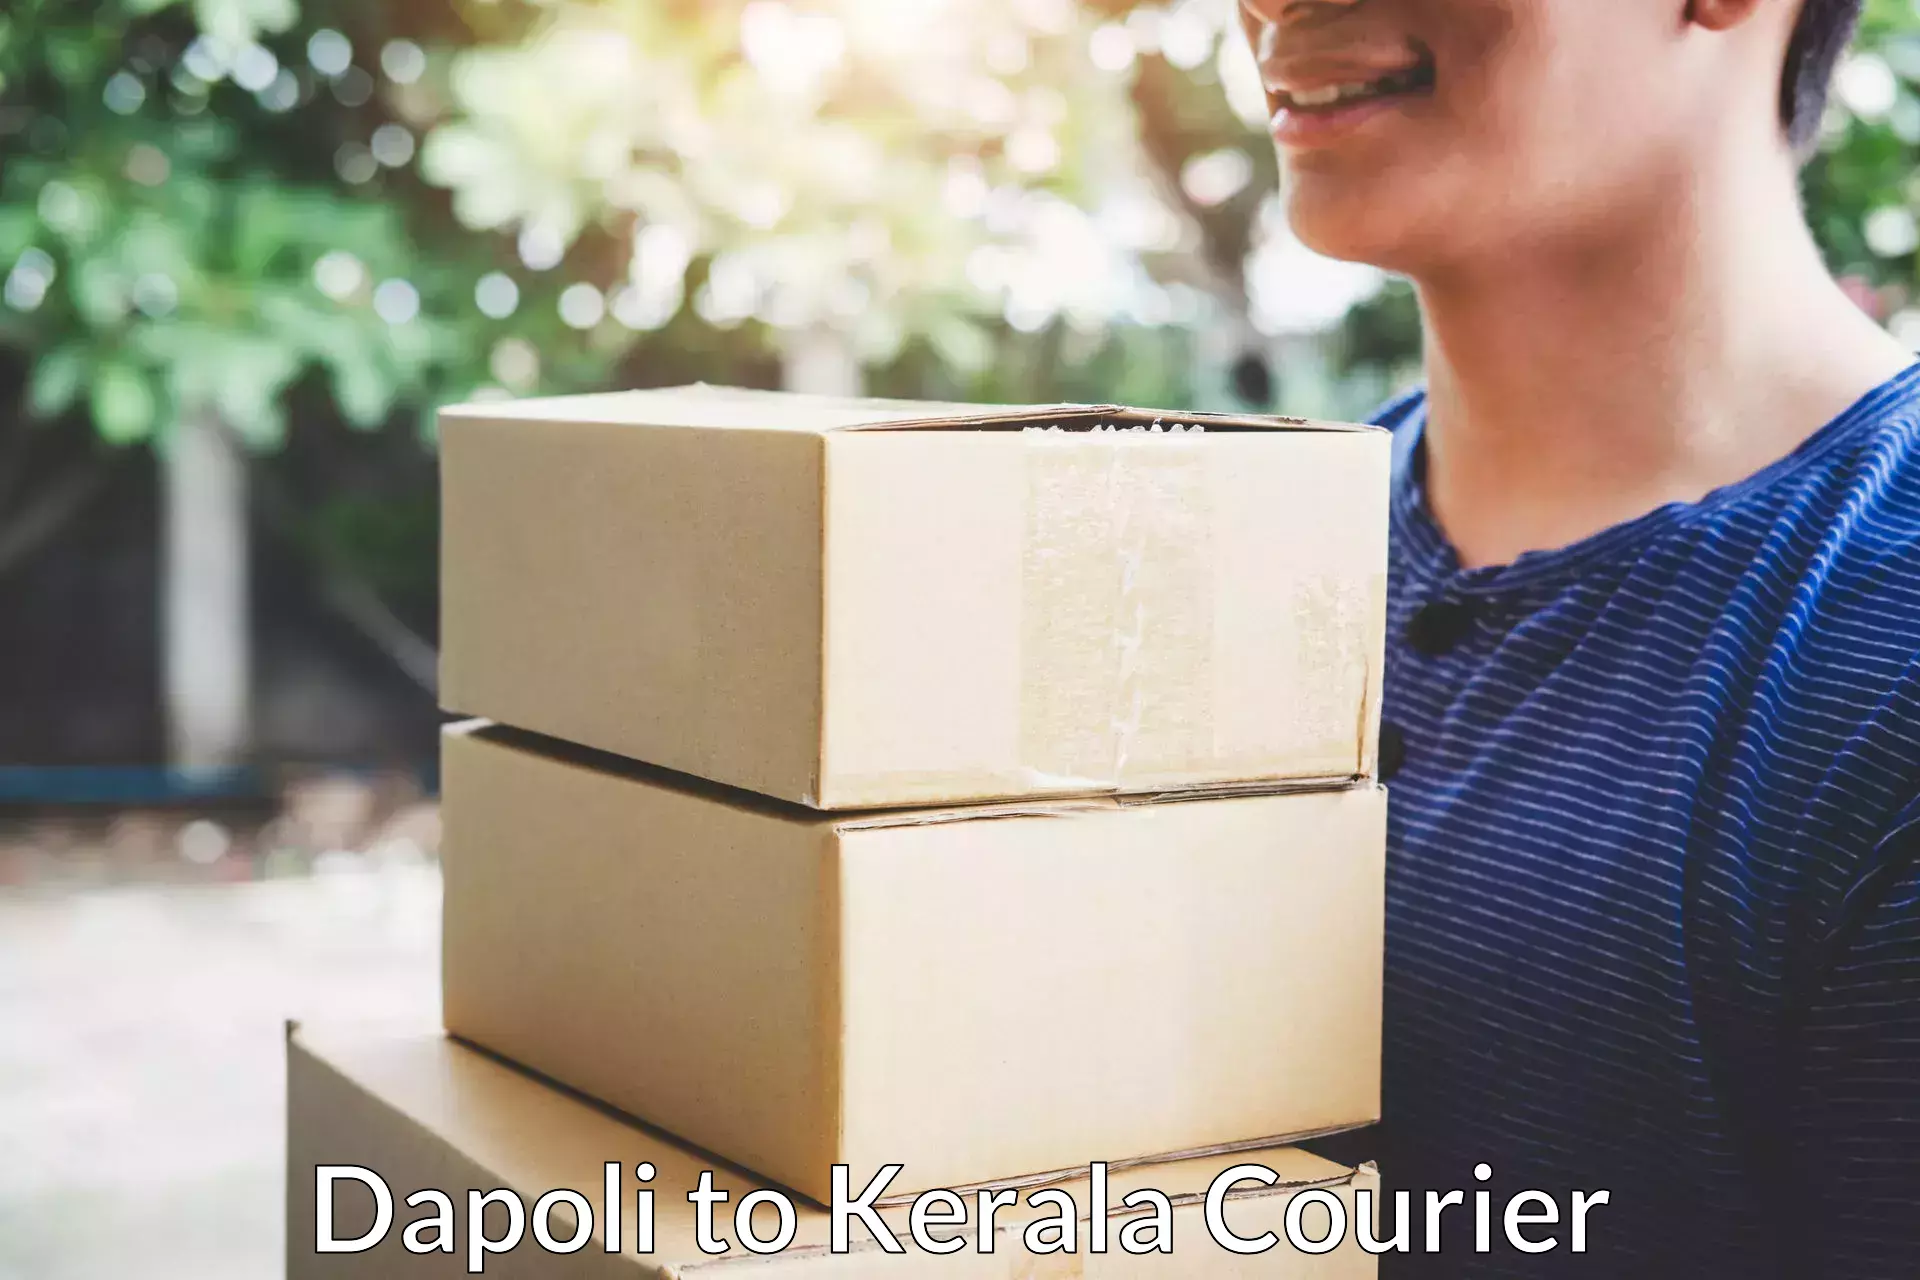 Nationwide furniture movers in Dapoli to Kerala